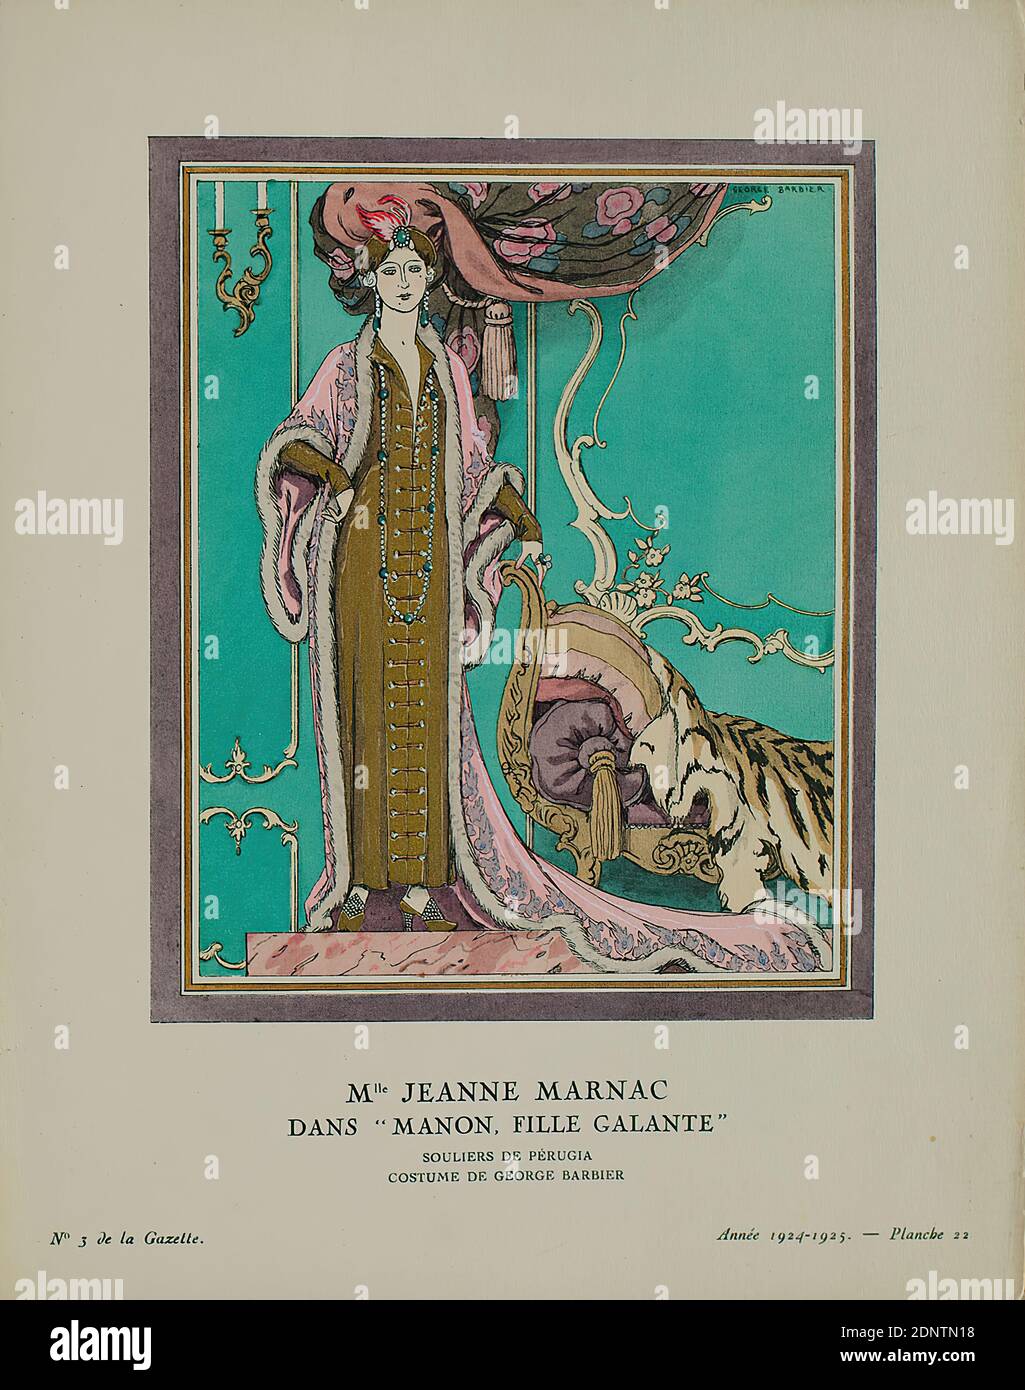 George Barbier, Mlle Jeanne Marnac dans 'Manon, fille galante' (Ilustración  de la Gaceta du Bon Ton, no 3, 1924-25), papel, grabado en línea, pocoro y  grabado en línea, total: Altura: 24,5 cm;